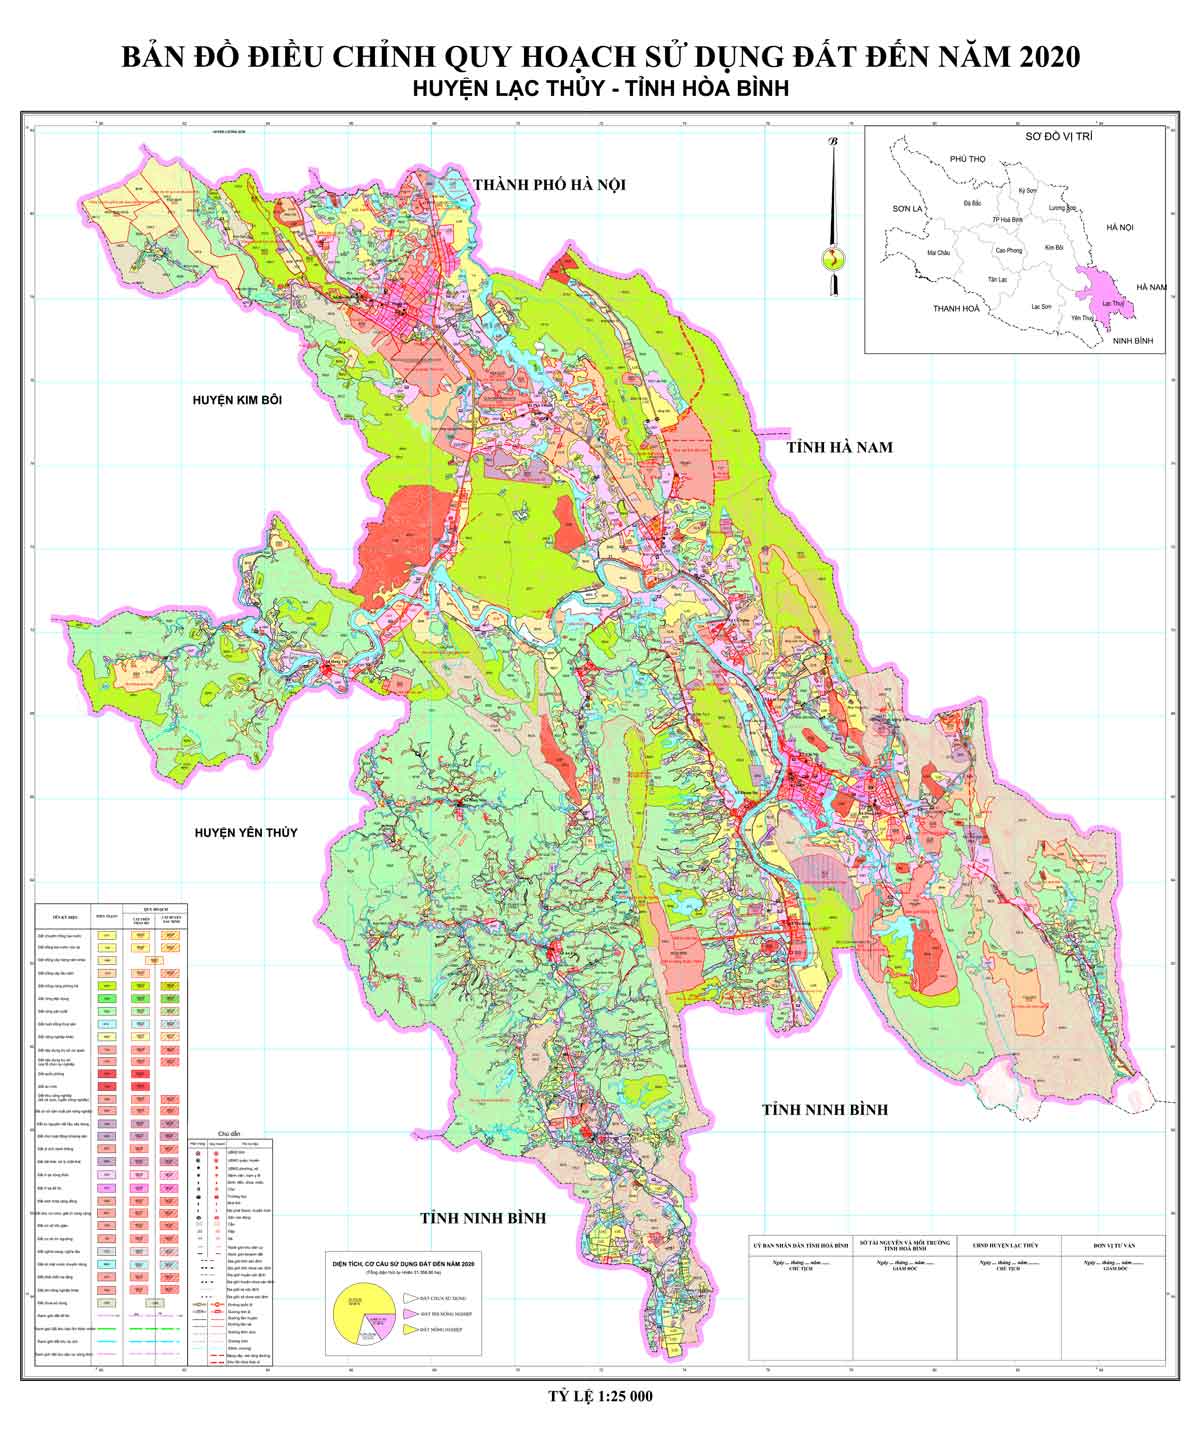 Bản đồ điều chỉnh QHSDĐ huyện Lạc Thủy đến năm 2020